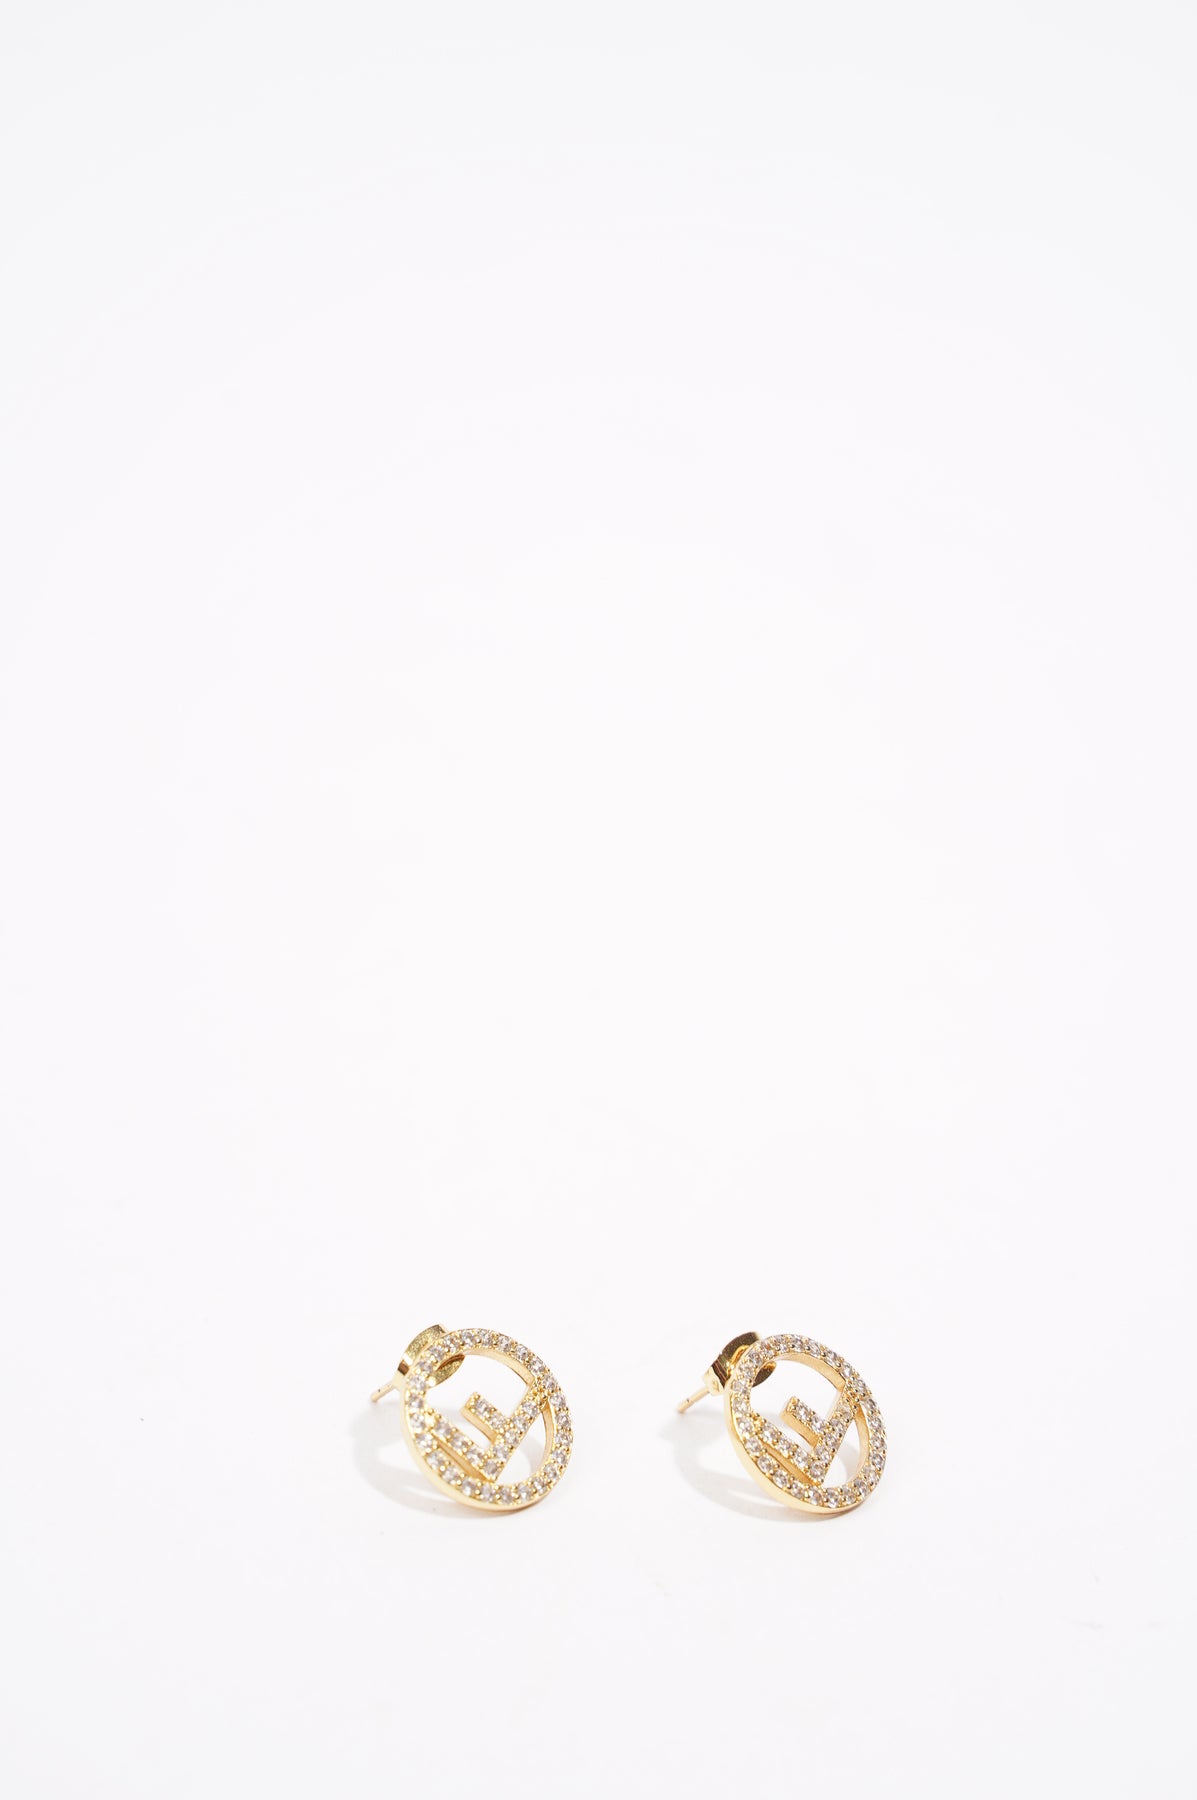 Fendi Fashion Earrings | eBay